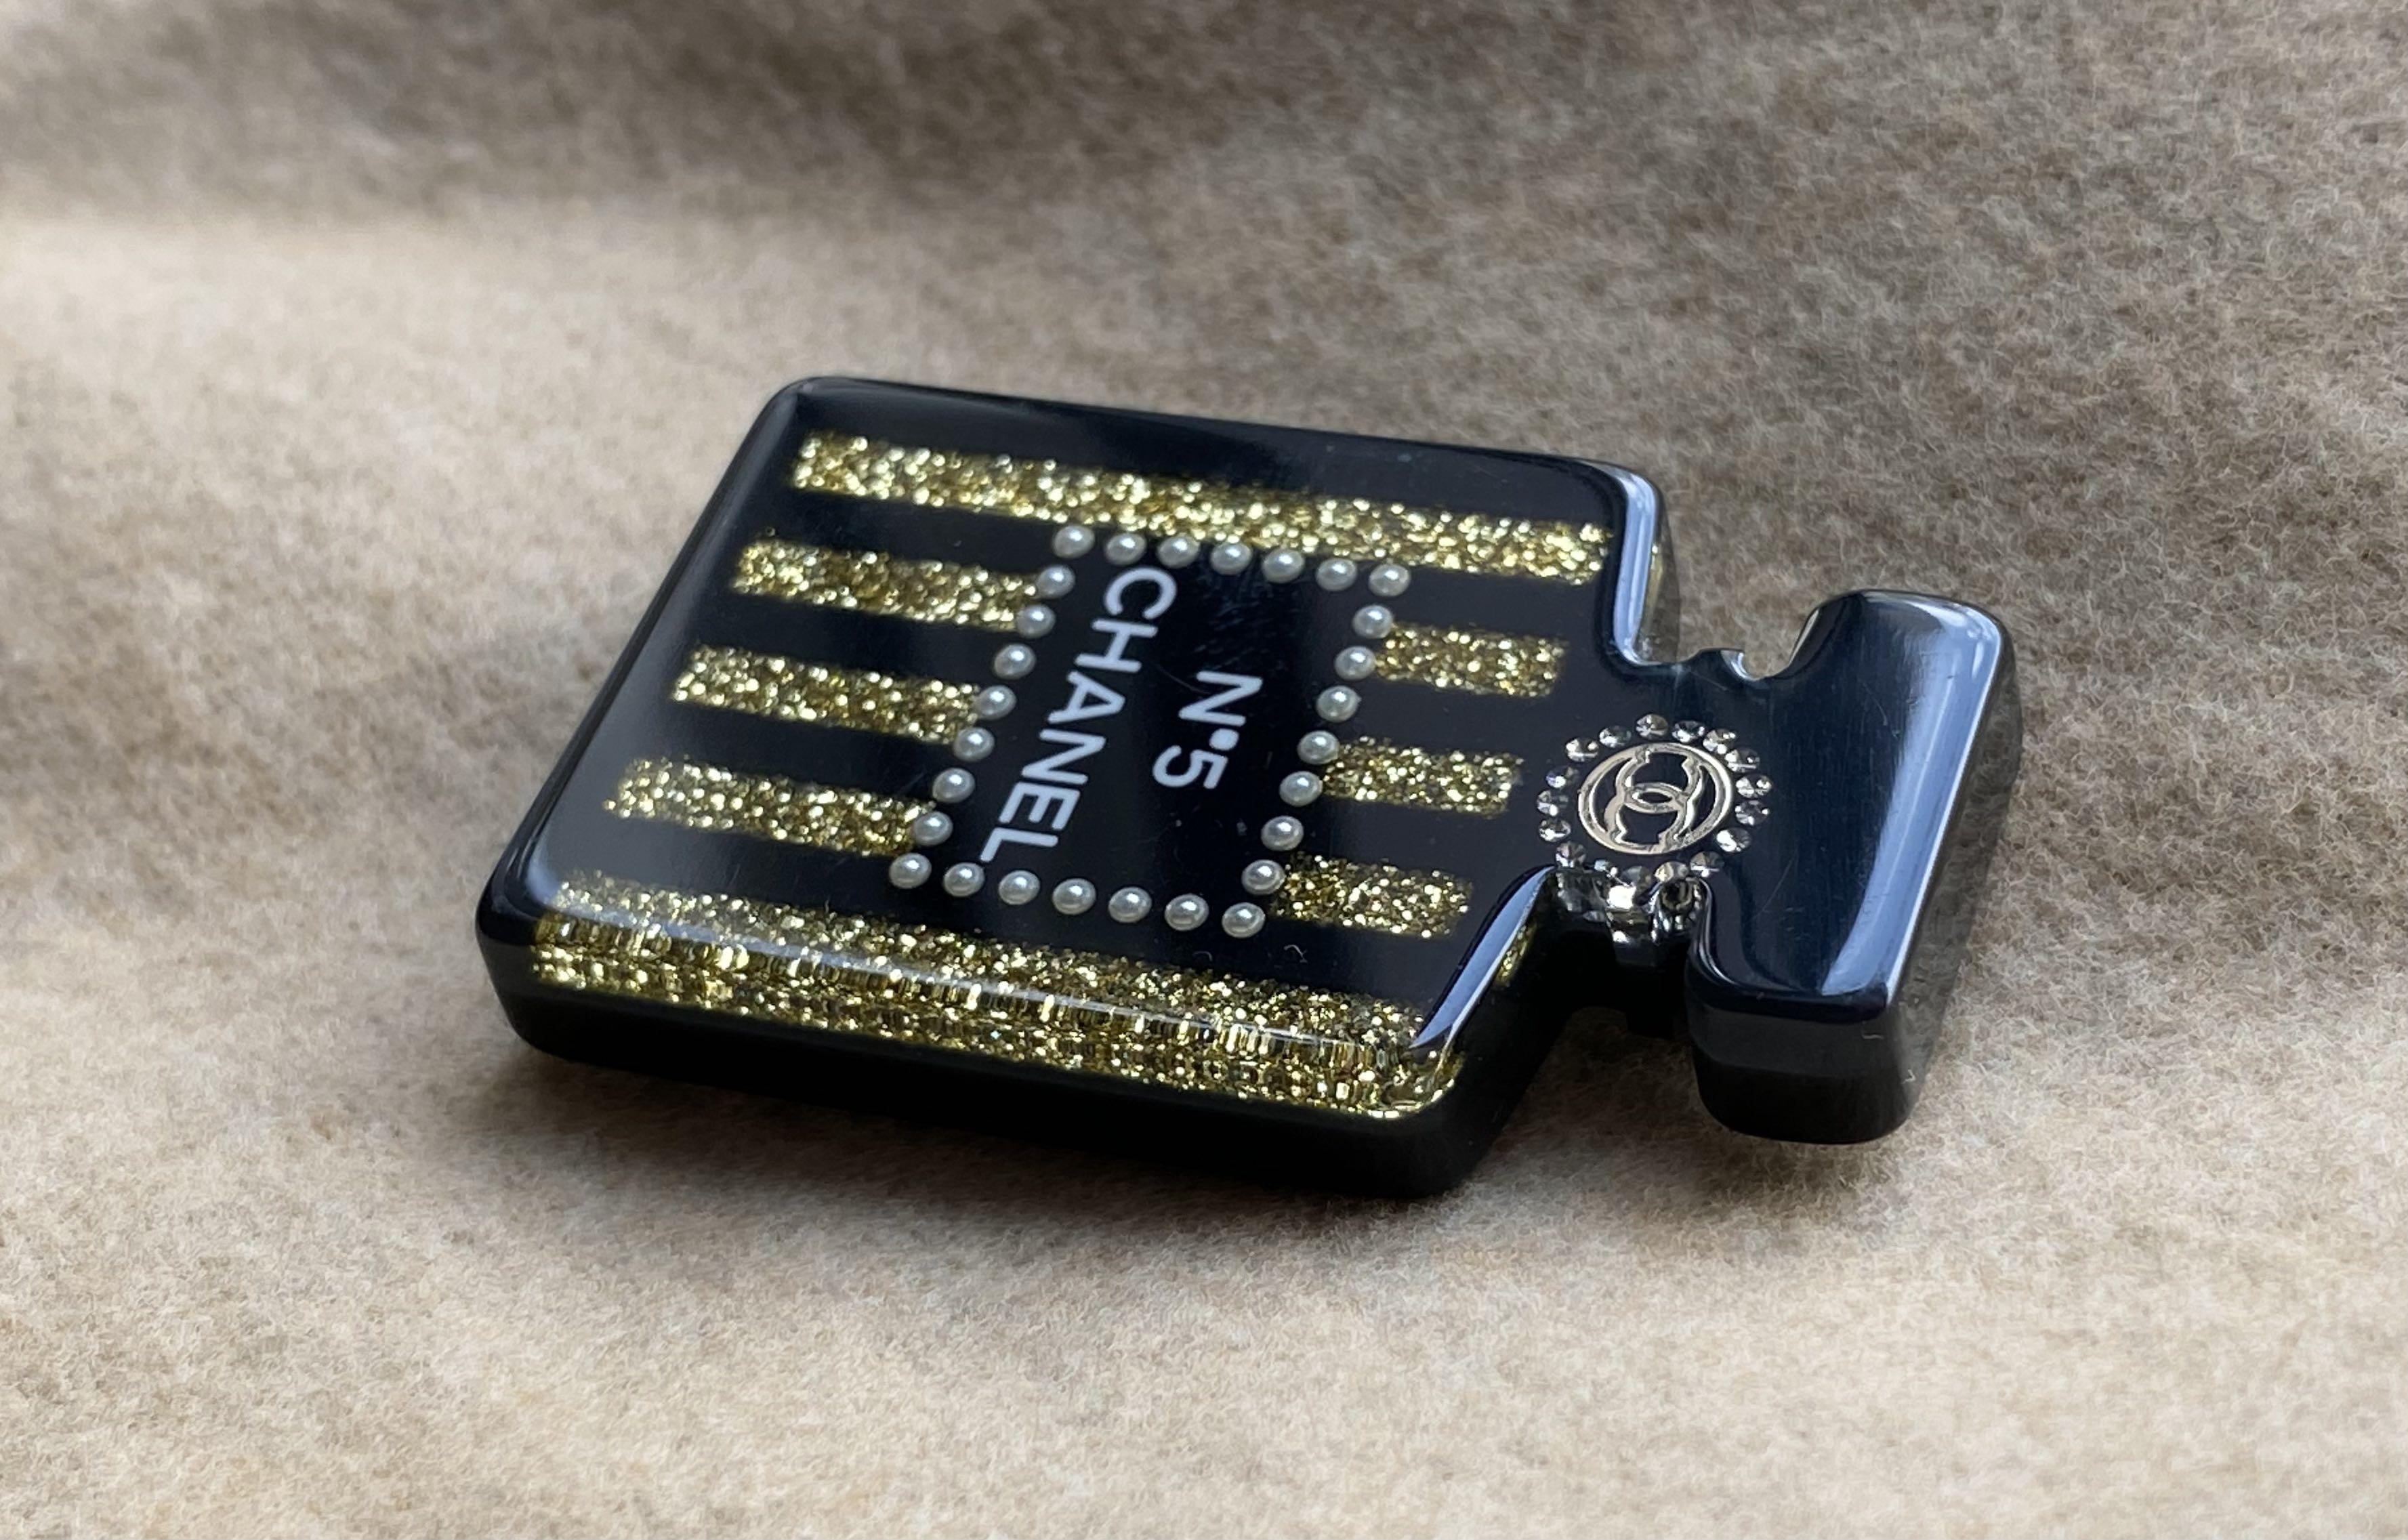 CHANEL miniature perfume bottle brooch